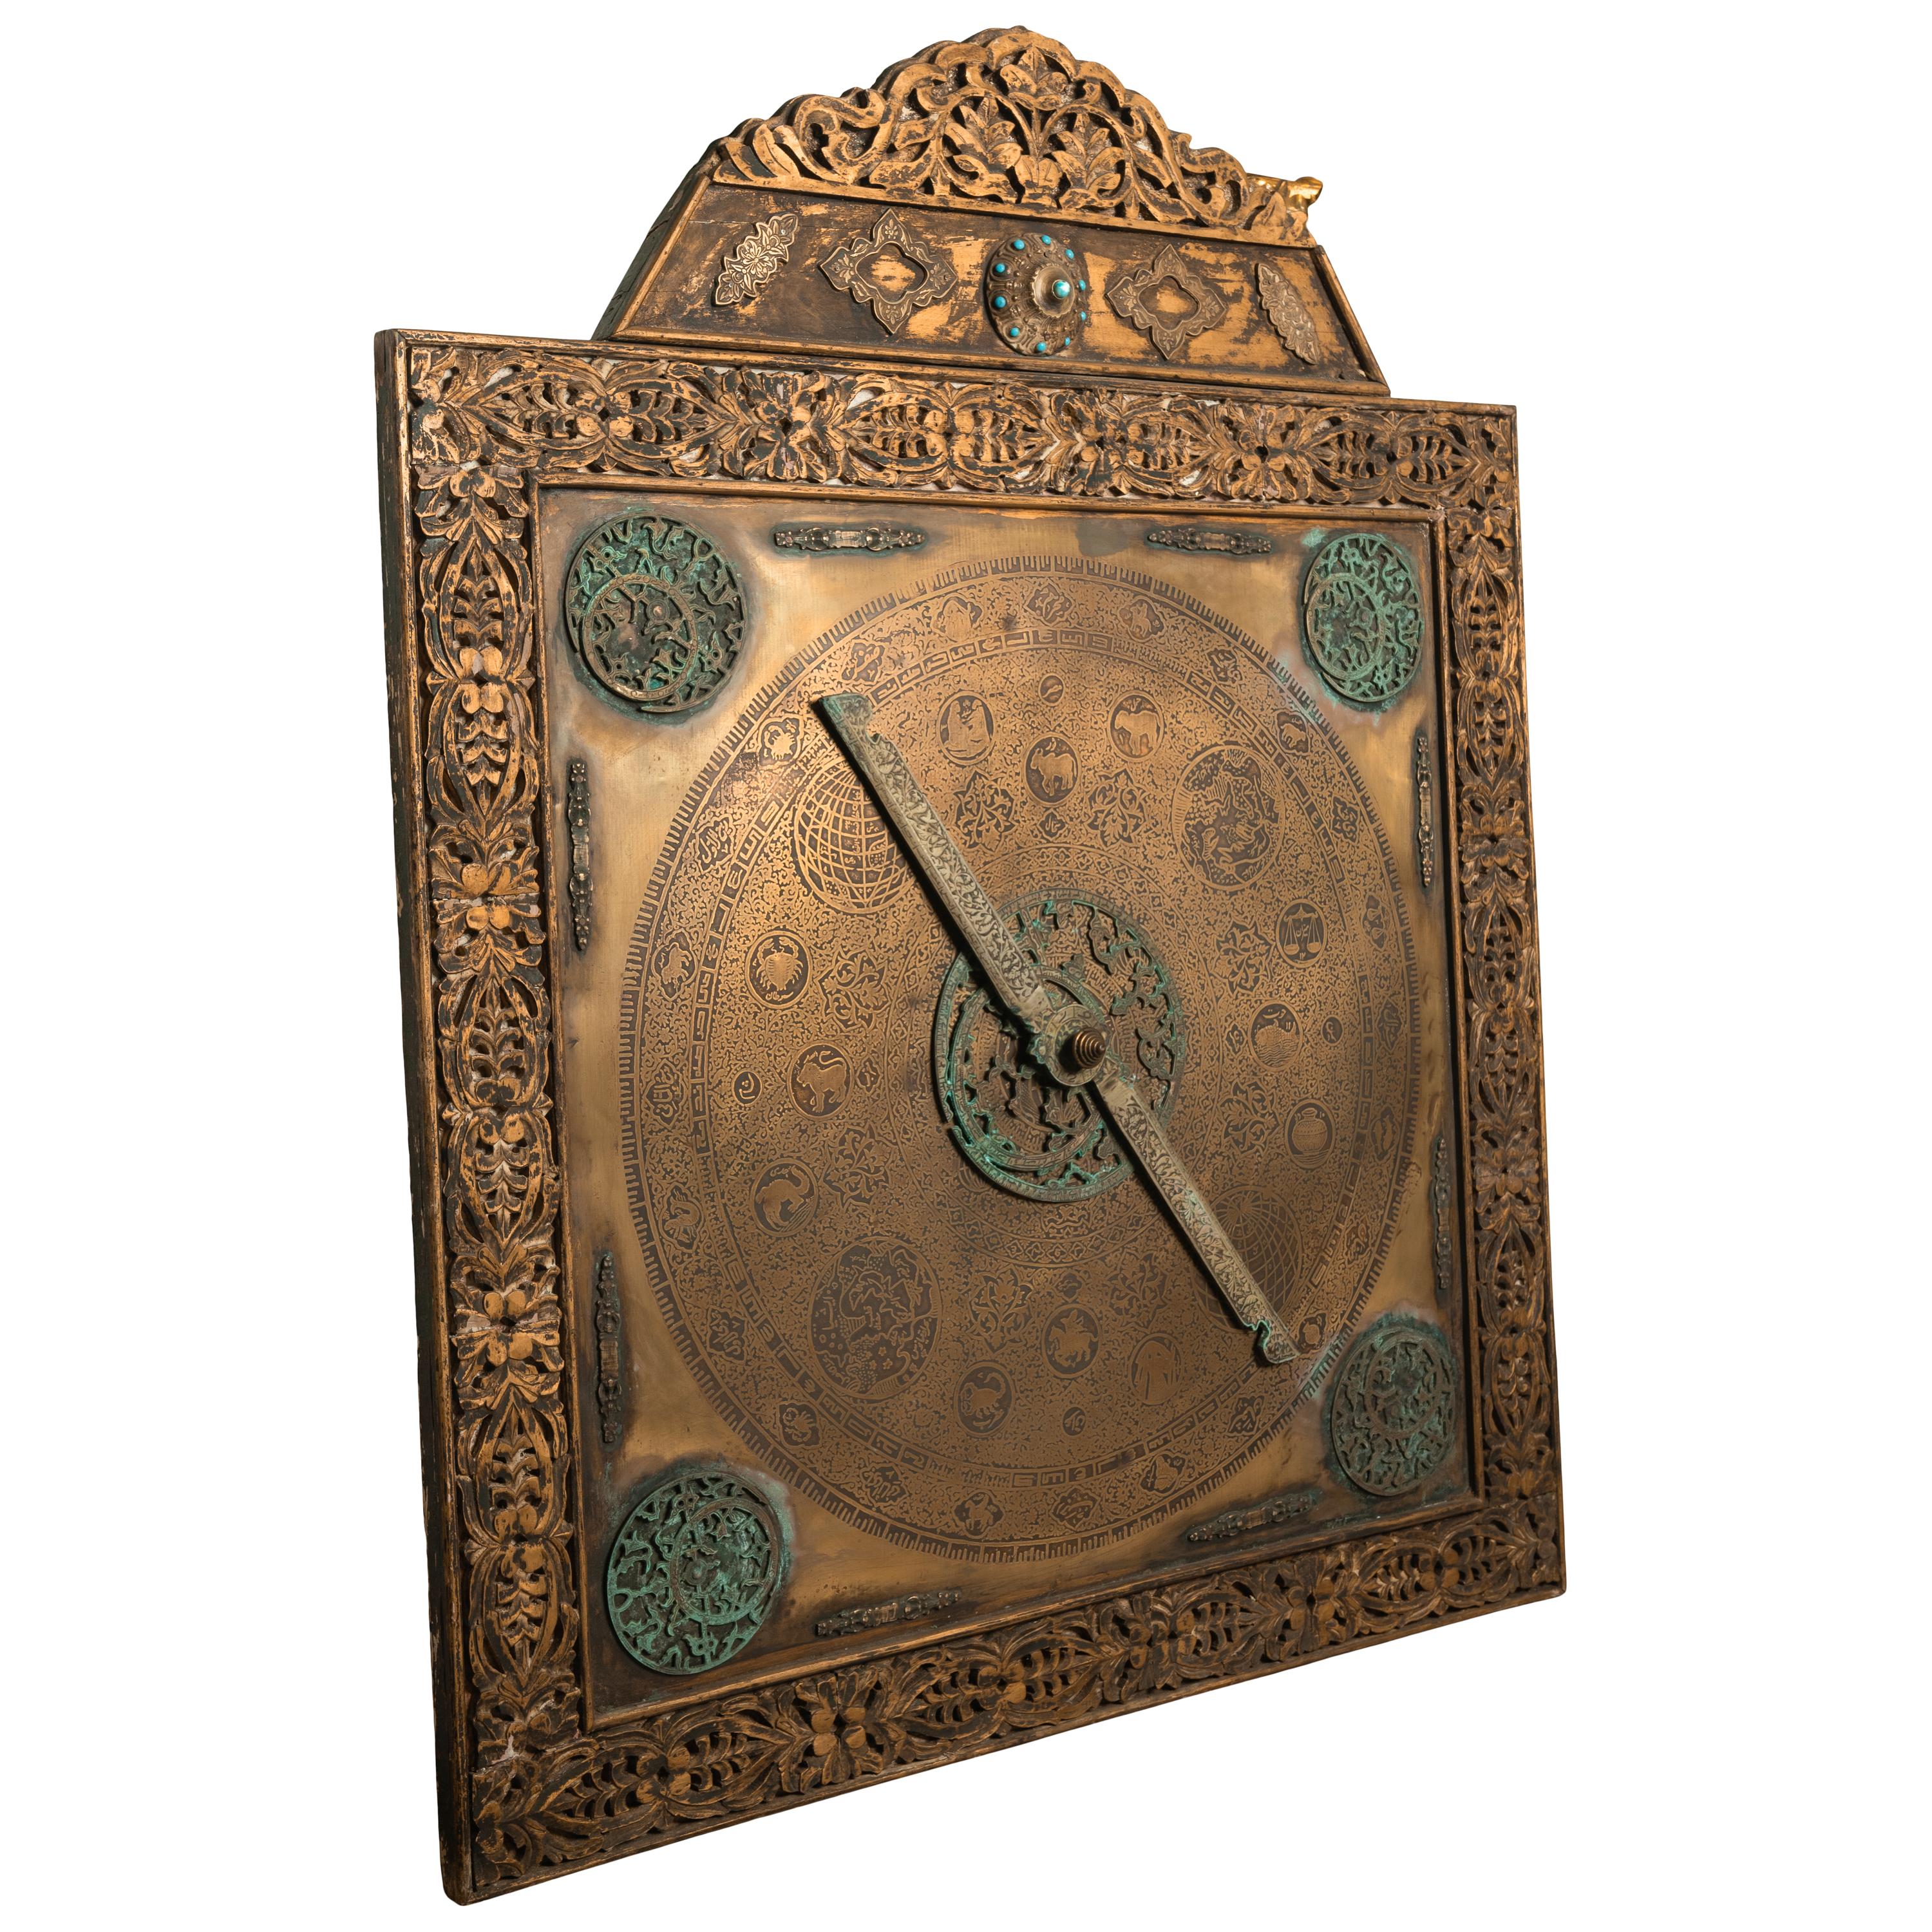 Ein unglaublich seltenes monumentales osmanisch-islamisches Astrolabium in Palastgröße aus dem 18. Jahrhundert auf einem Staffeleiständer, Türkei, um 1720.
Dieses seltene Astrolabium in Palastgröße auf einem Ständer besteht aus zwei Teilen. Der